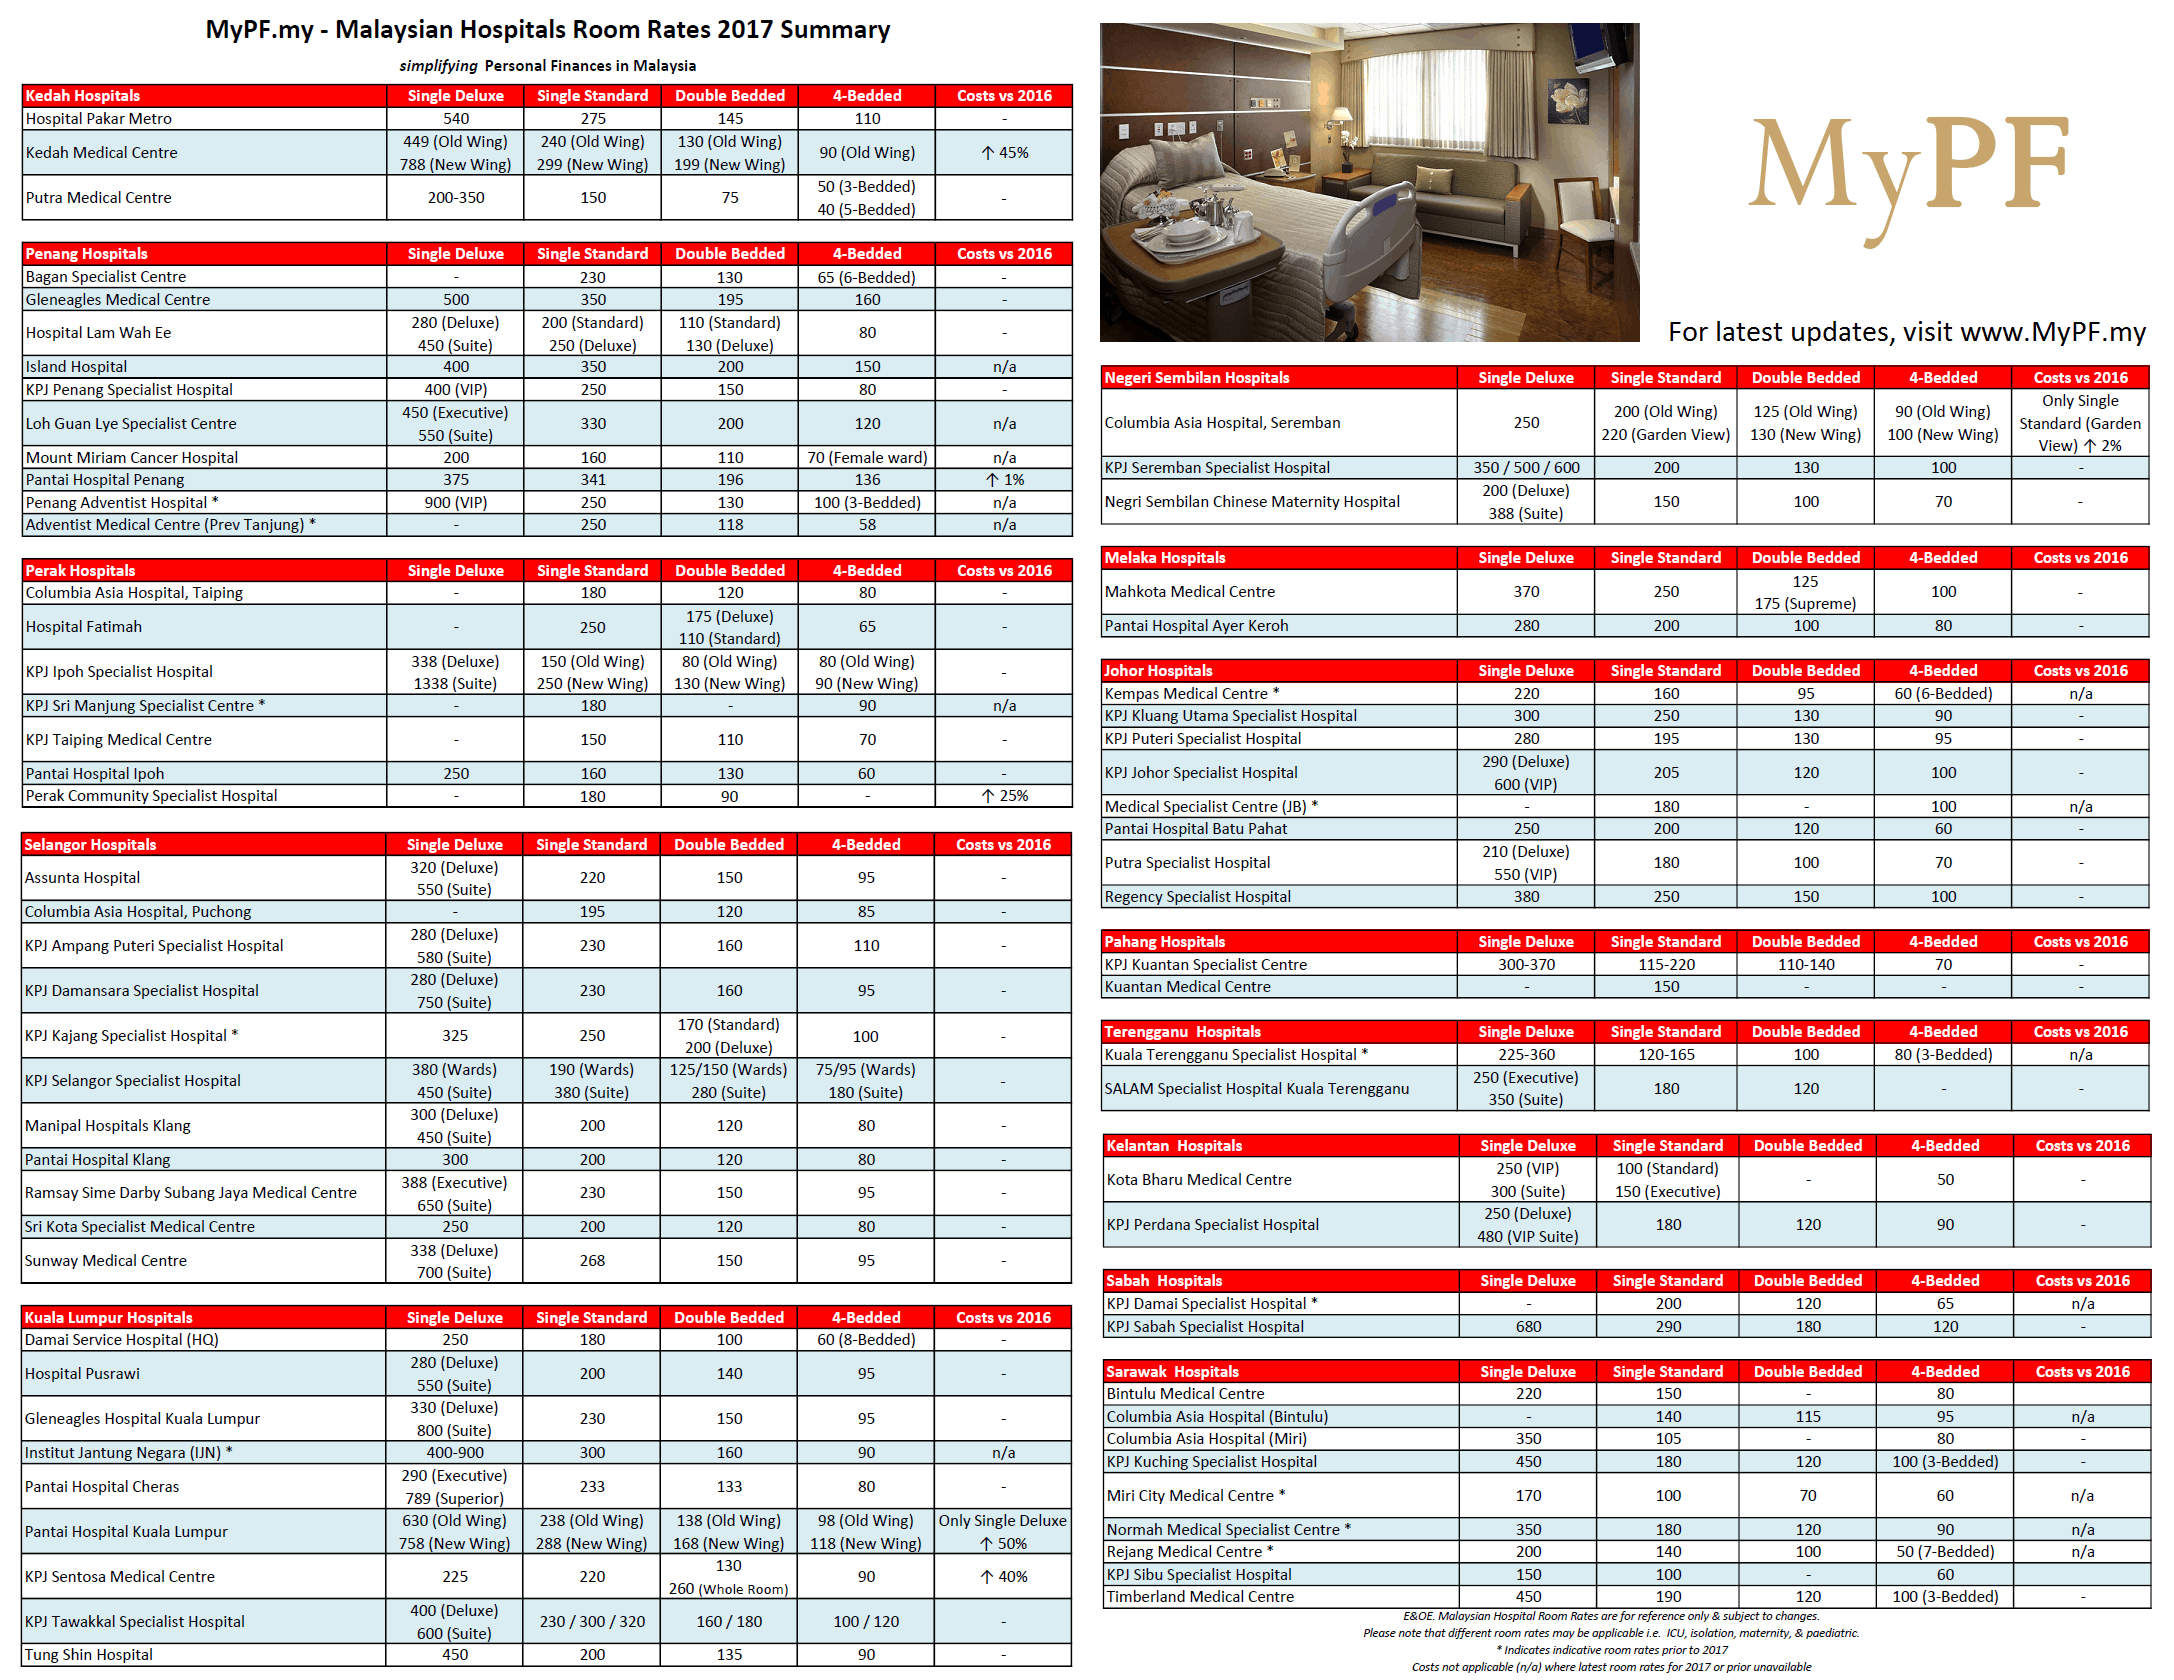 Malaysian Hospital Room Rates - MyPF.my